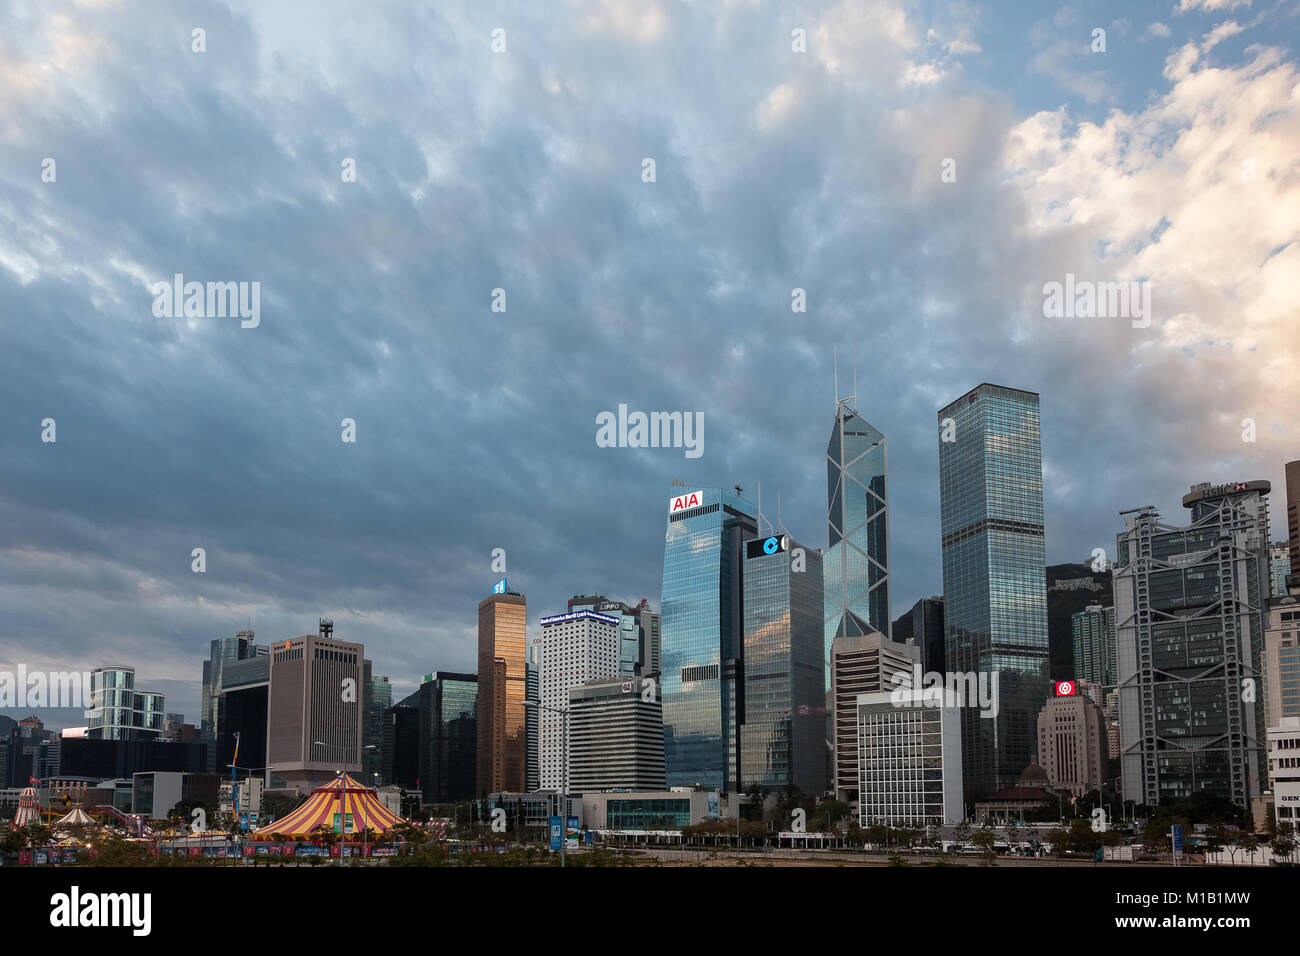 Les gratte-ciel de Hong Kong tôt le matin. Avec la tour Bank of Chine centre/droite. Central, Hong Kong, Chine. Banque D'Images